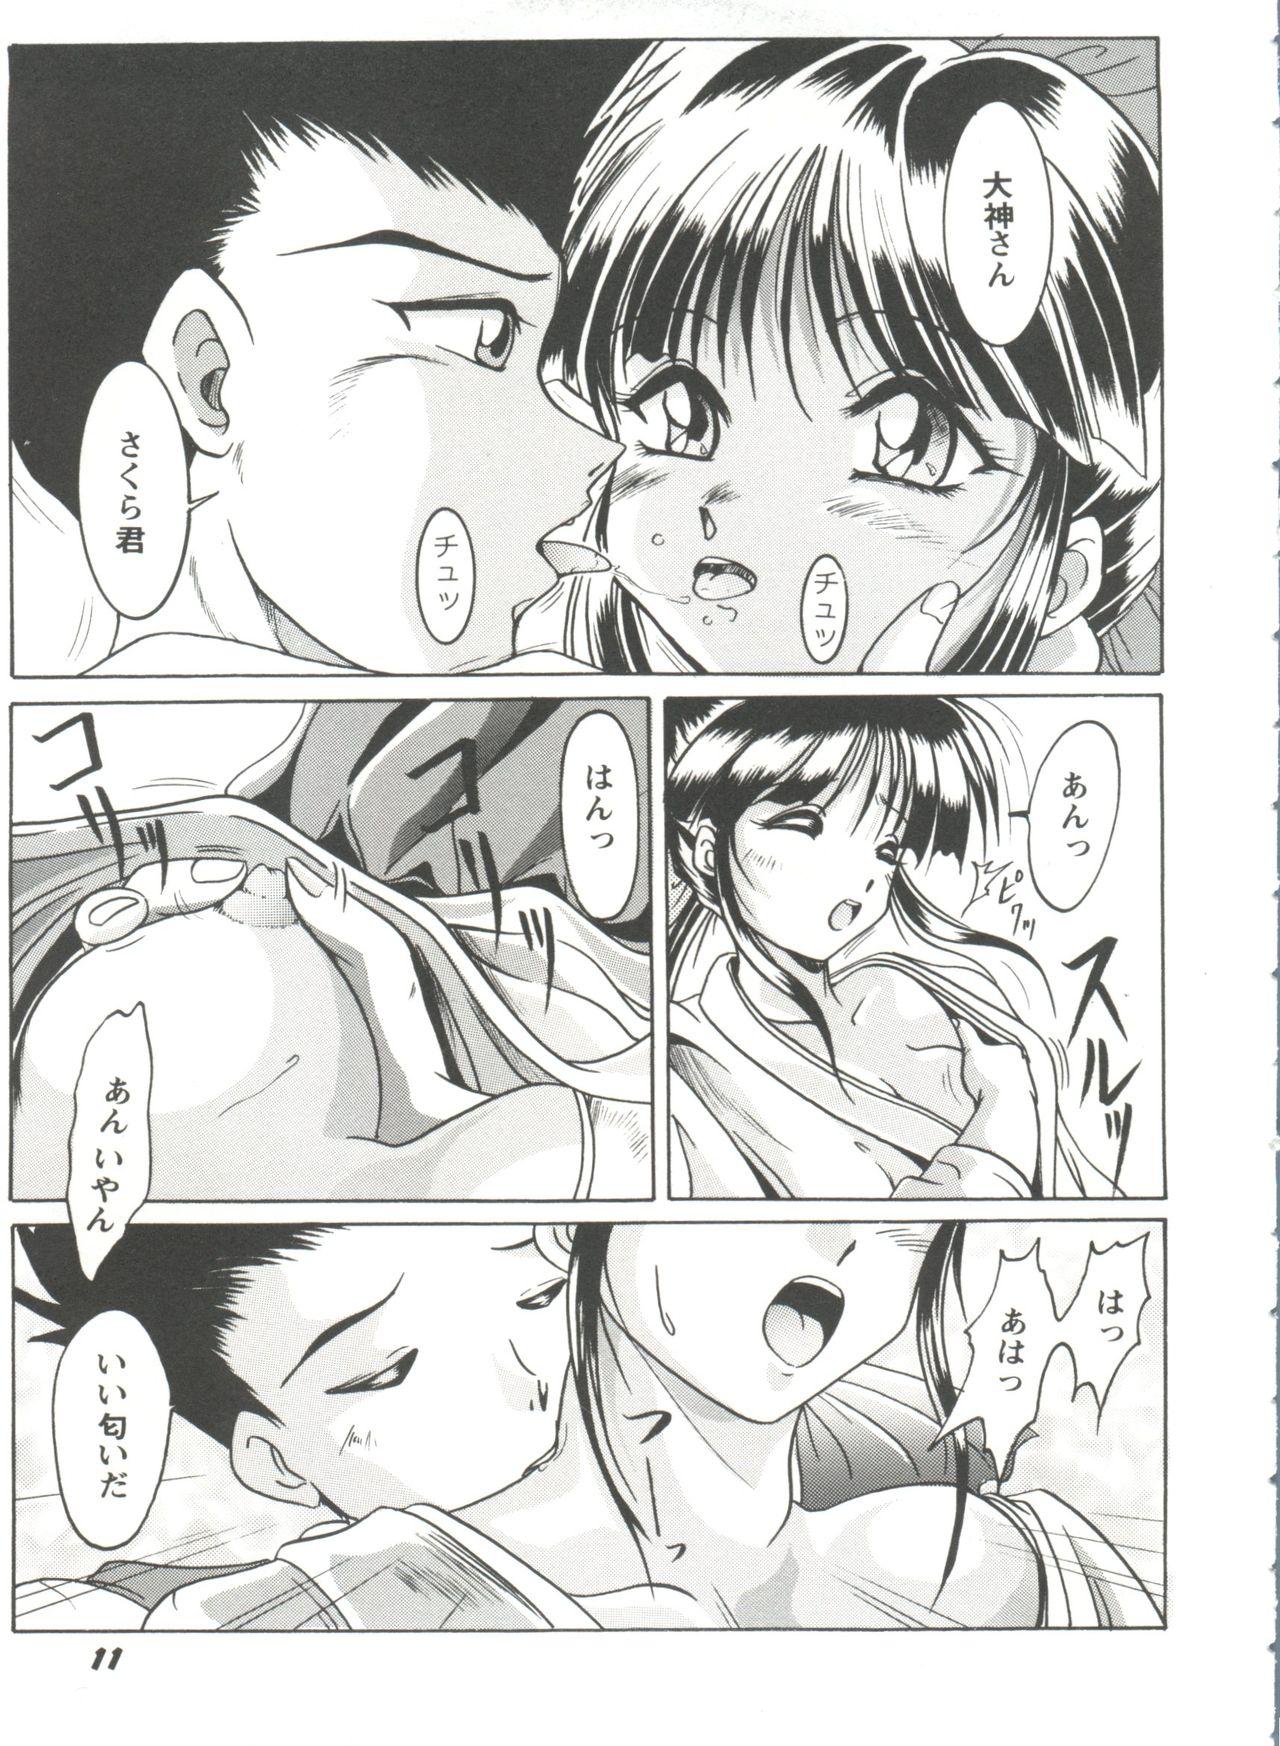 Teenage Porn Girl's Parade Scene 4 - Sakura taisen Martian successor nadesico Slayers Yu yu hakusho Rola - Page 12